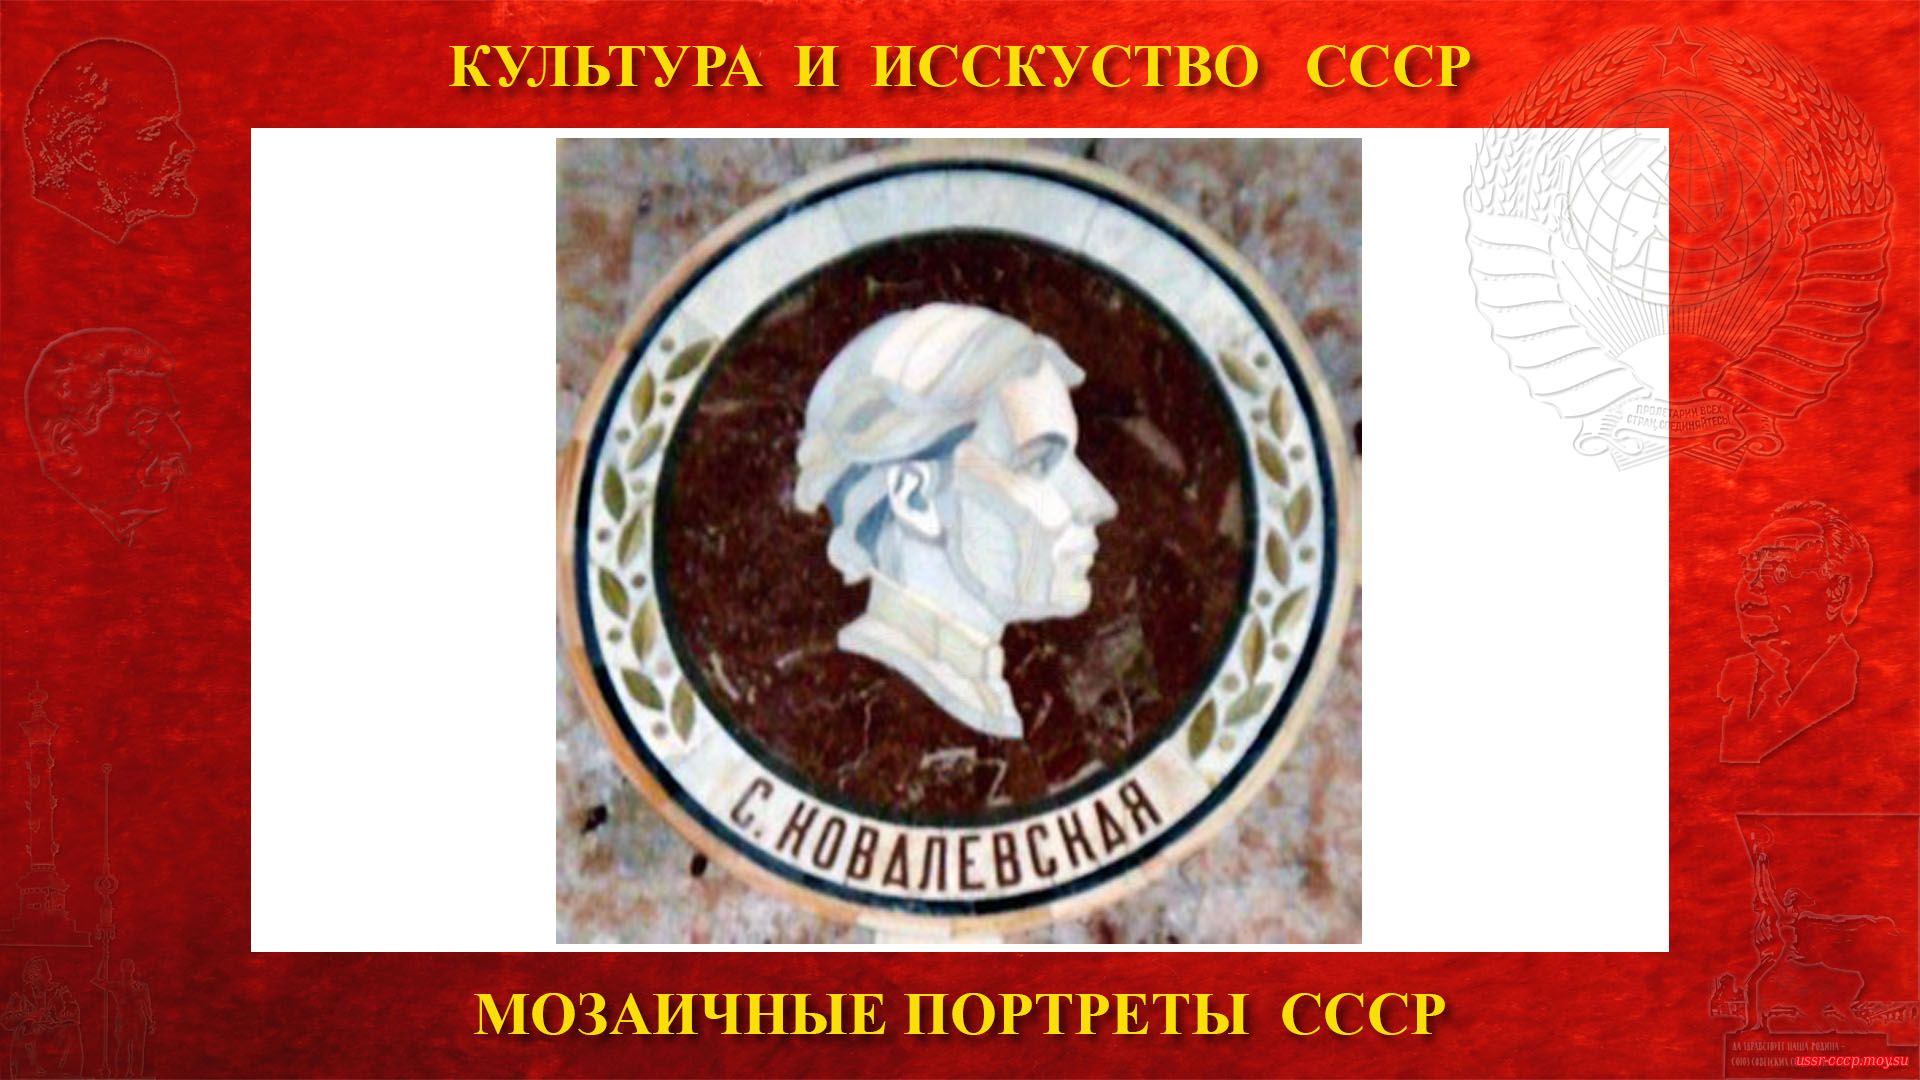 Мозаичный портрет Ковалевской С.В. на Ленинских горах в ГЗ МГУ (Москва 1953) (повествование)